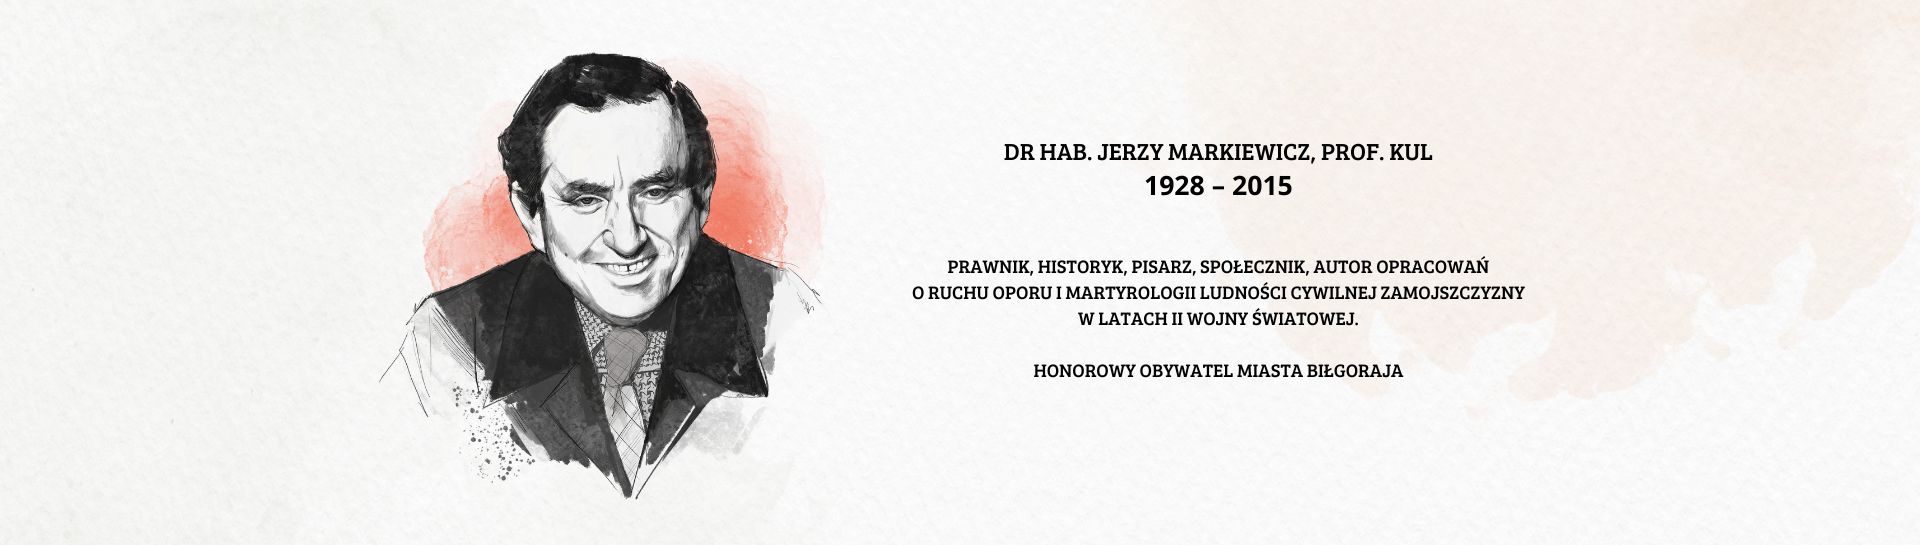 DR. HAB. JERZY MARKIEWICZ PROF. KUL 1928 - 2015  